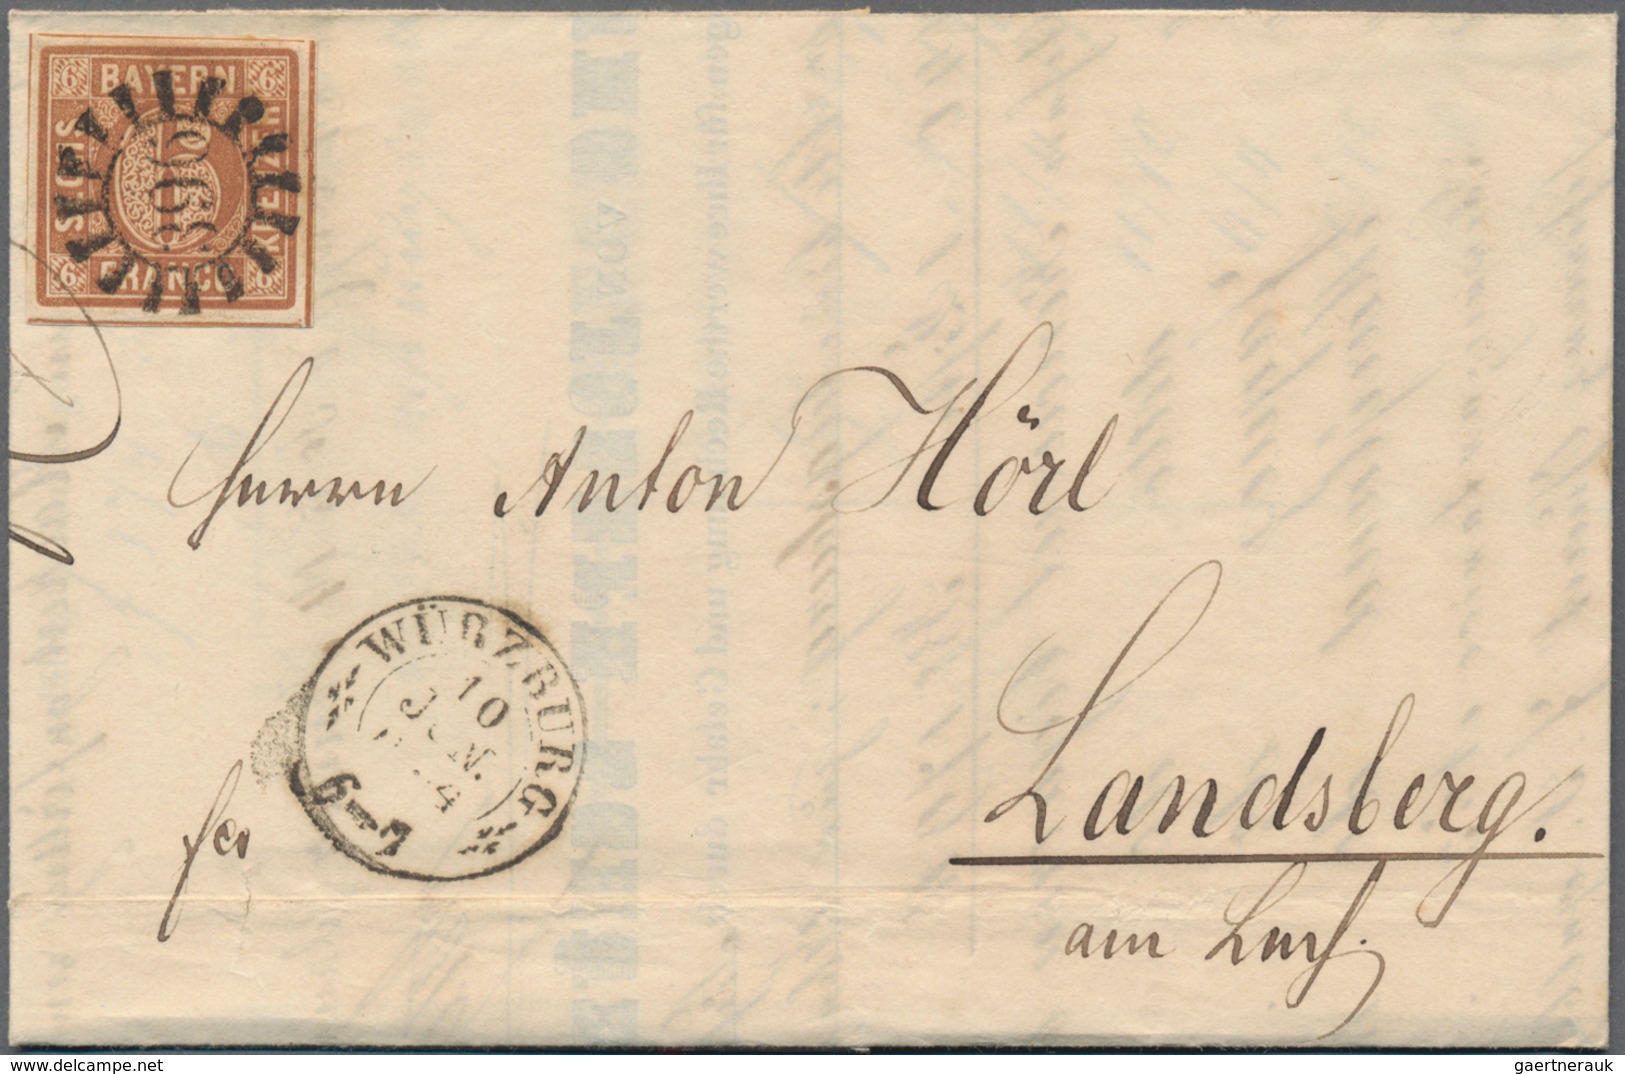 Bayern - Marken und Briefe: 1850-1860, Partie mit rund 775 Briefen aus einer Korrespondenz, dabei zu